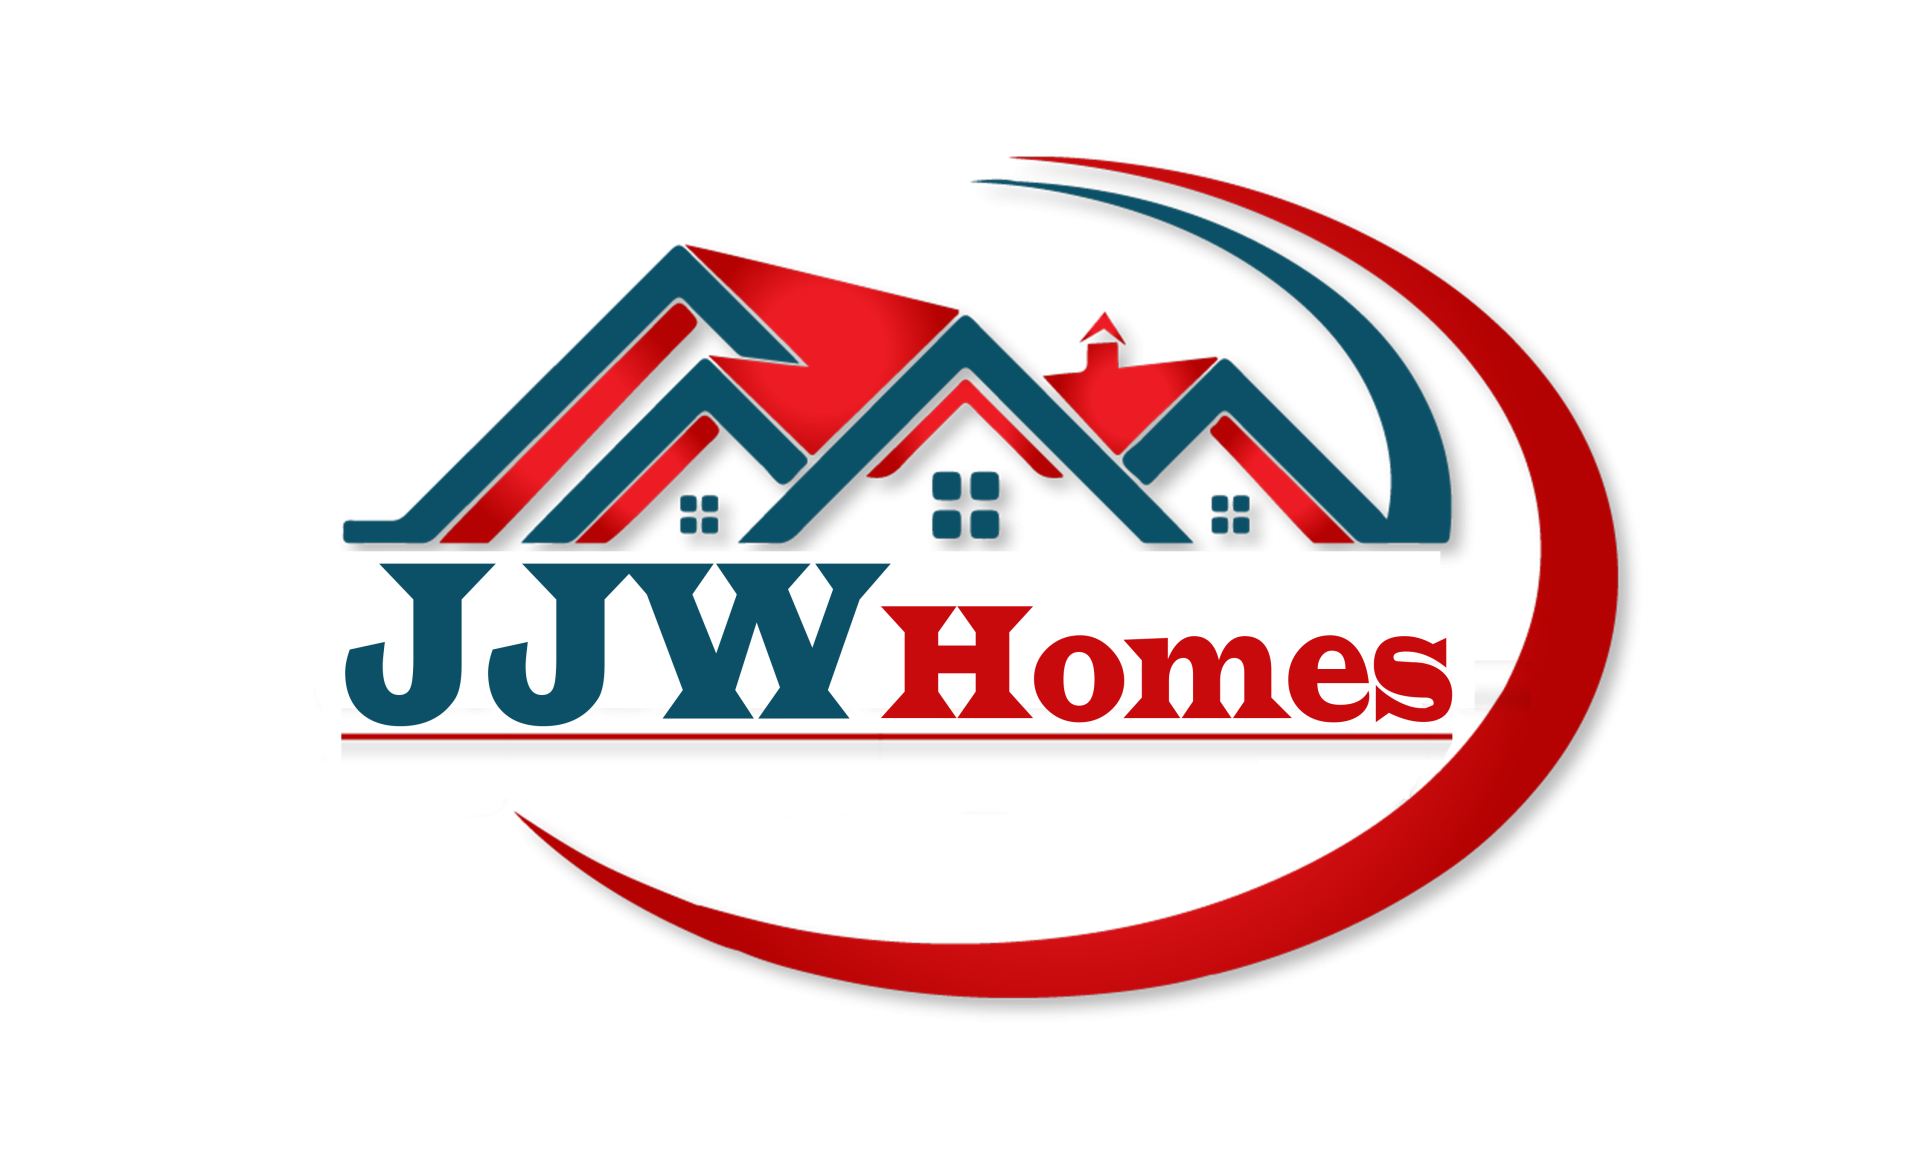 JJW Homes, LLC